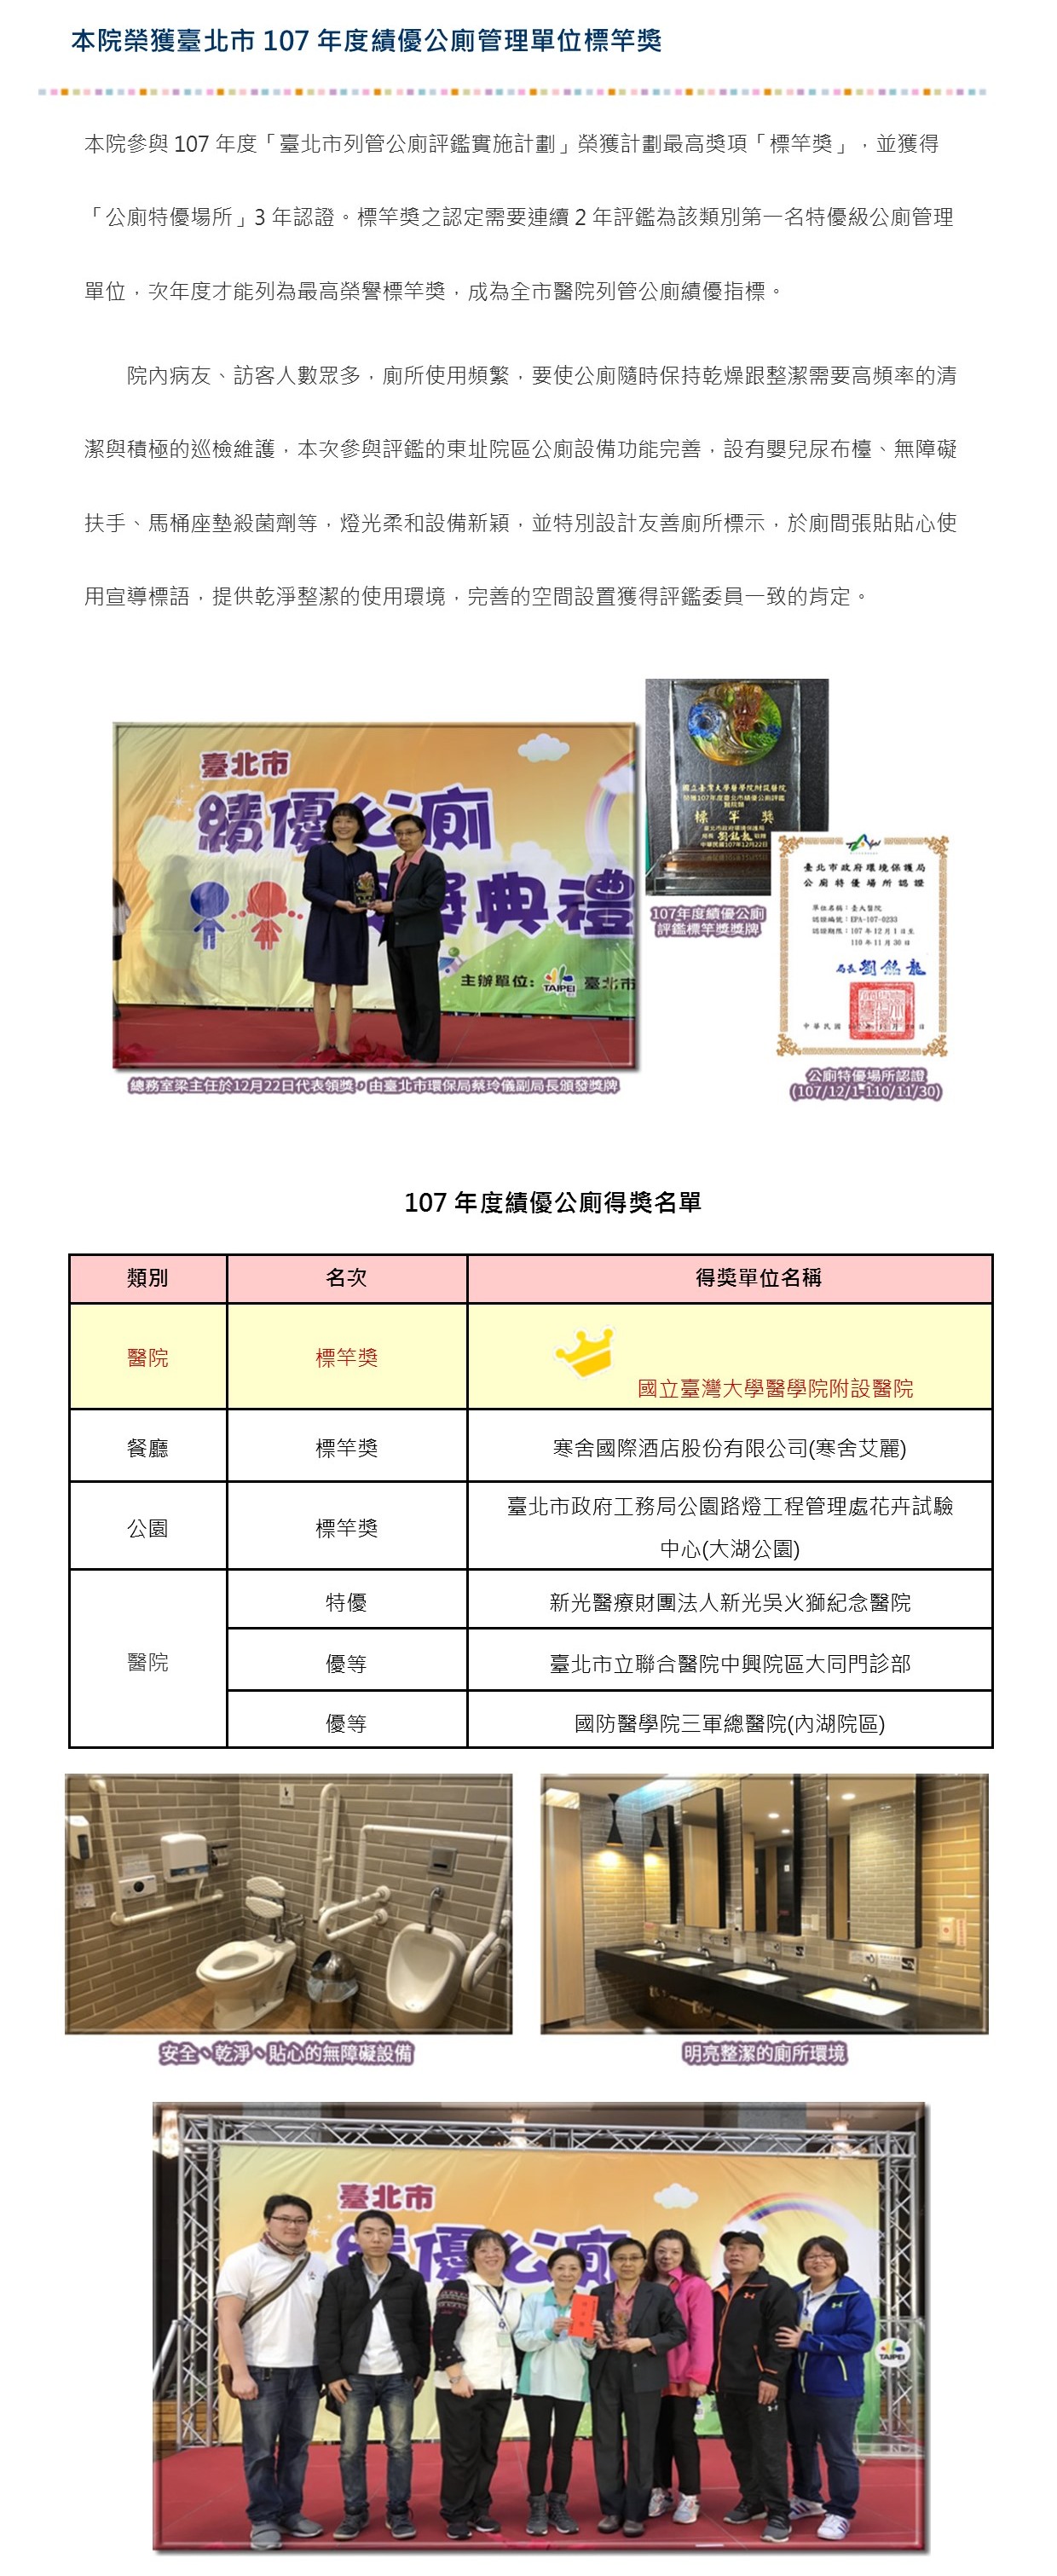 本院榮獲臺北市107年度績優公廁管理單位標竿獎